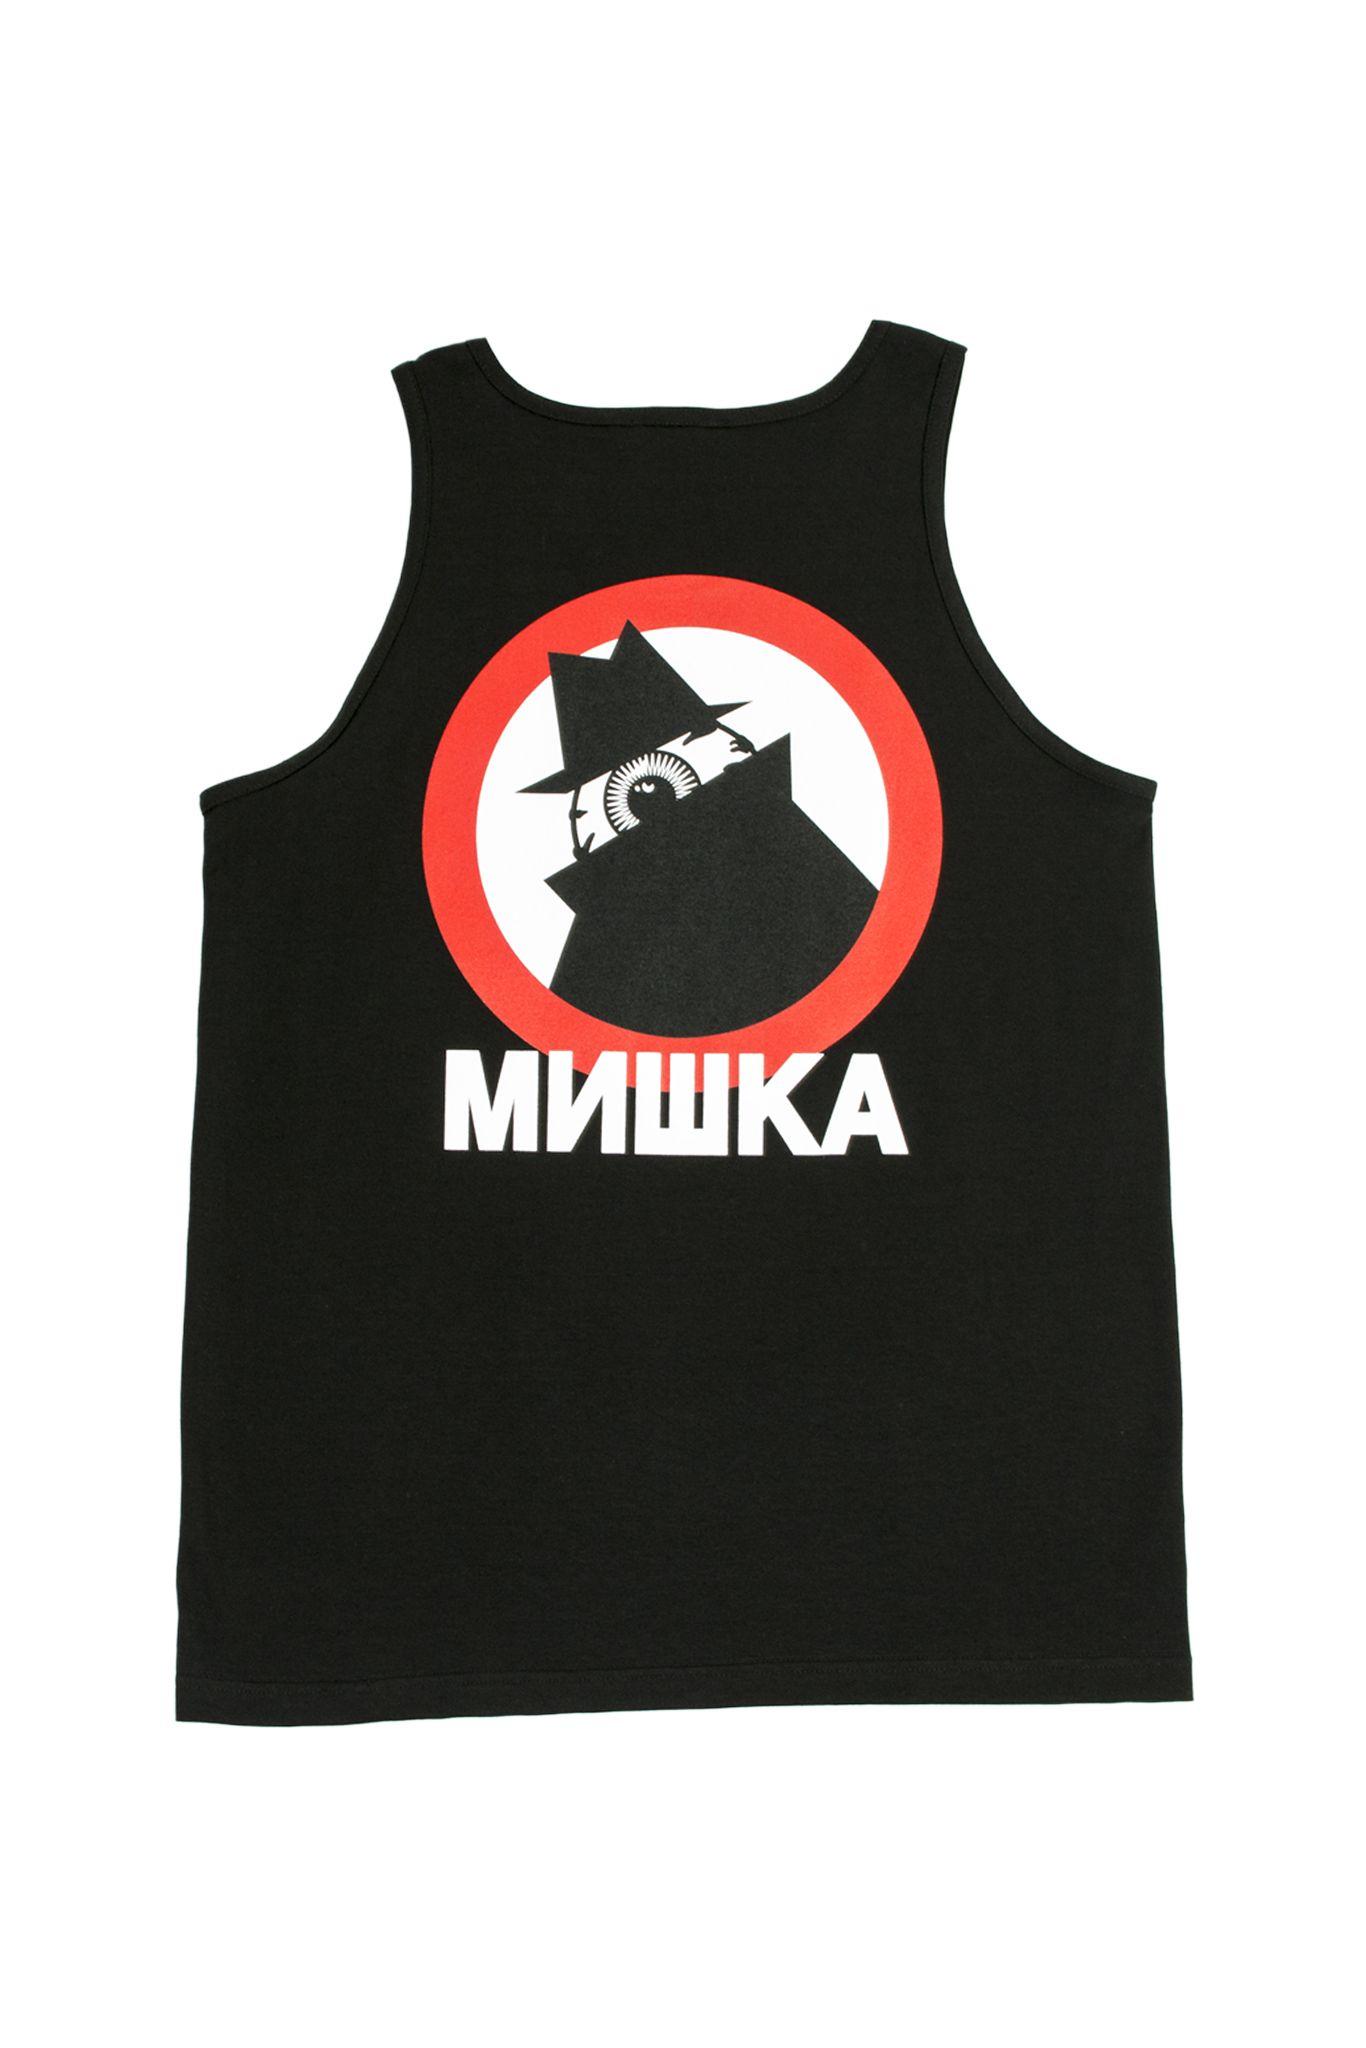 Mishka Keep Watch Logo - Mishka Neighborhood Keep Watch Tank Top Tank Top